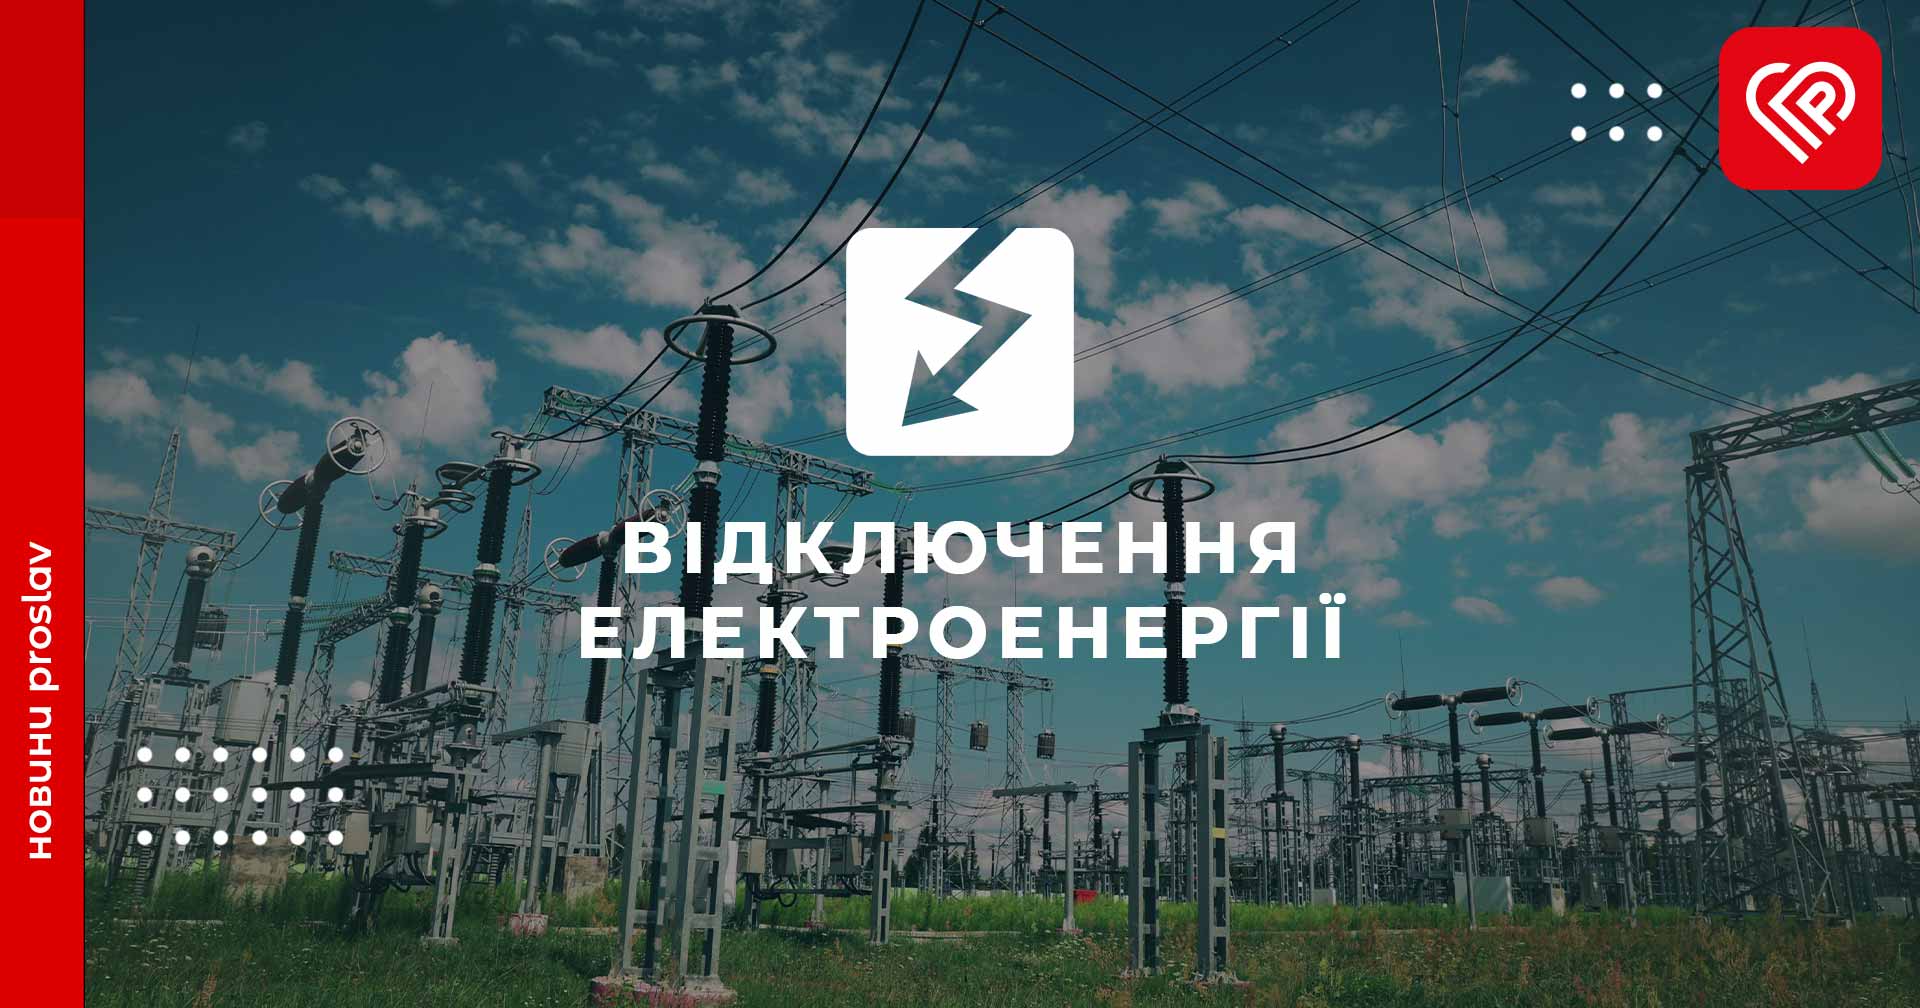 16 травня на Переяславщині будуть відбуватись планові відключення електроенергії: графік та перелік населених пунктів